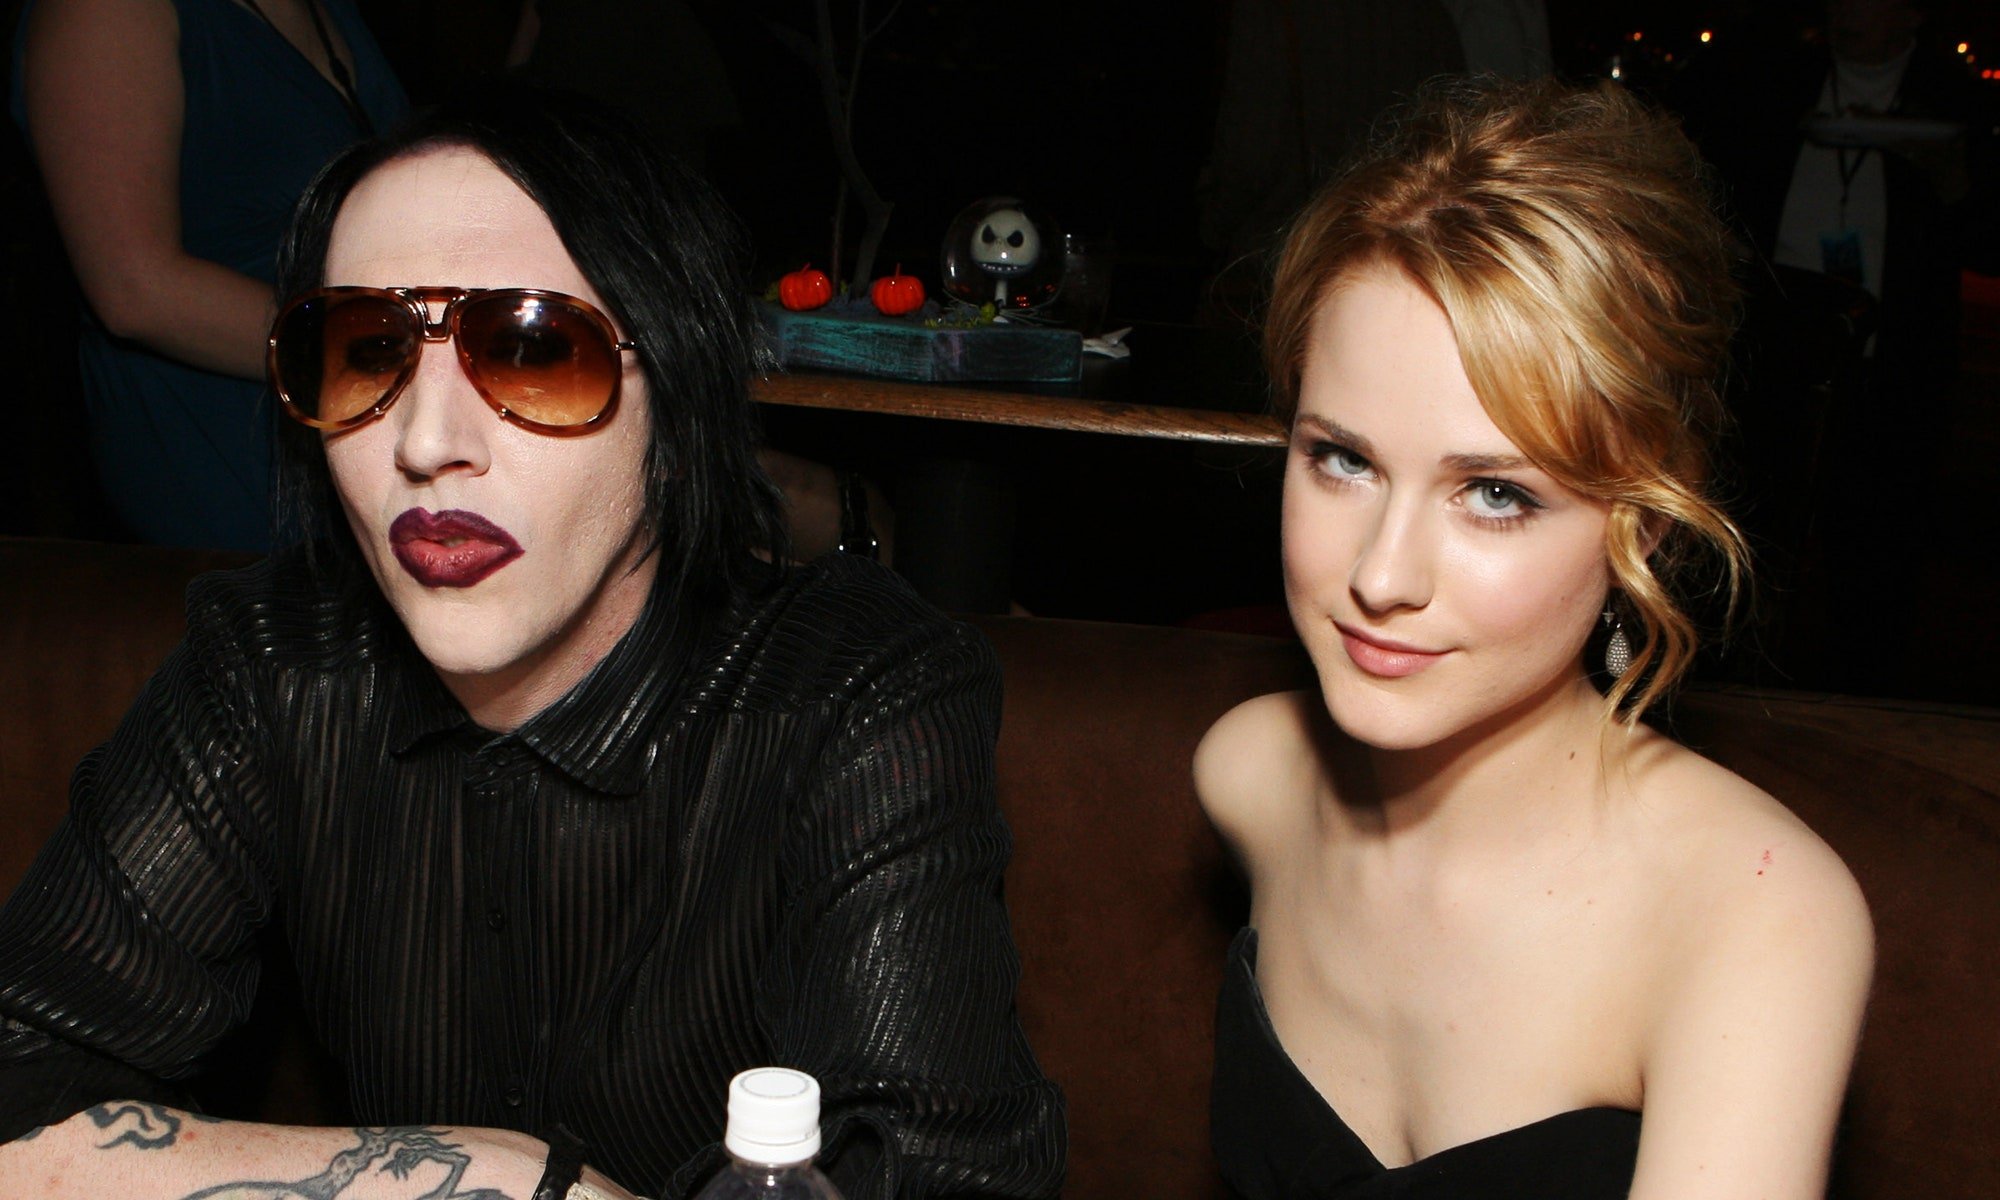  Actriţa Evan Rachel Wood îl acuză de viol pe Marilyn Manson într-un documentar